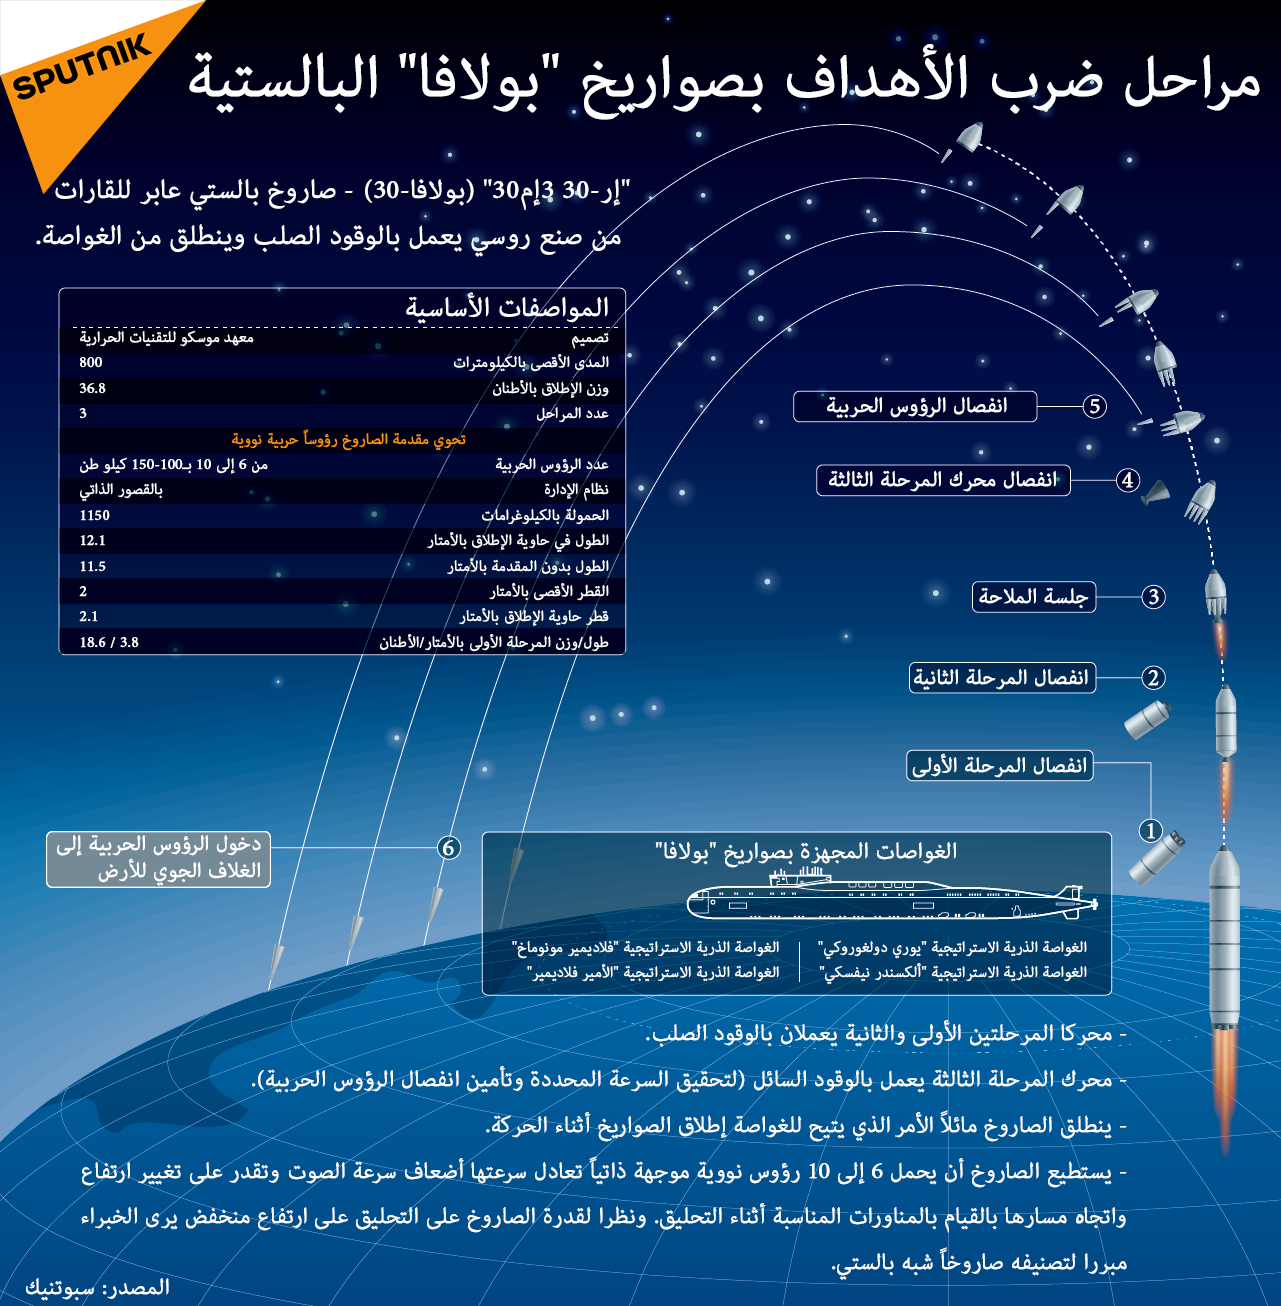 مراحل ضرب الأهداف بصواريخ بولافا البالستية - سبوتنيك عربي